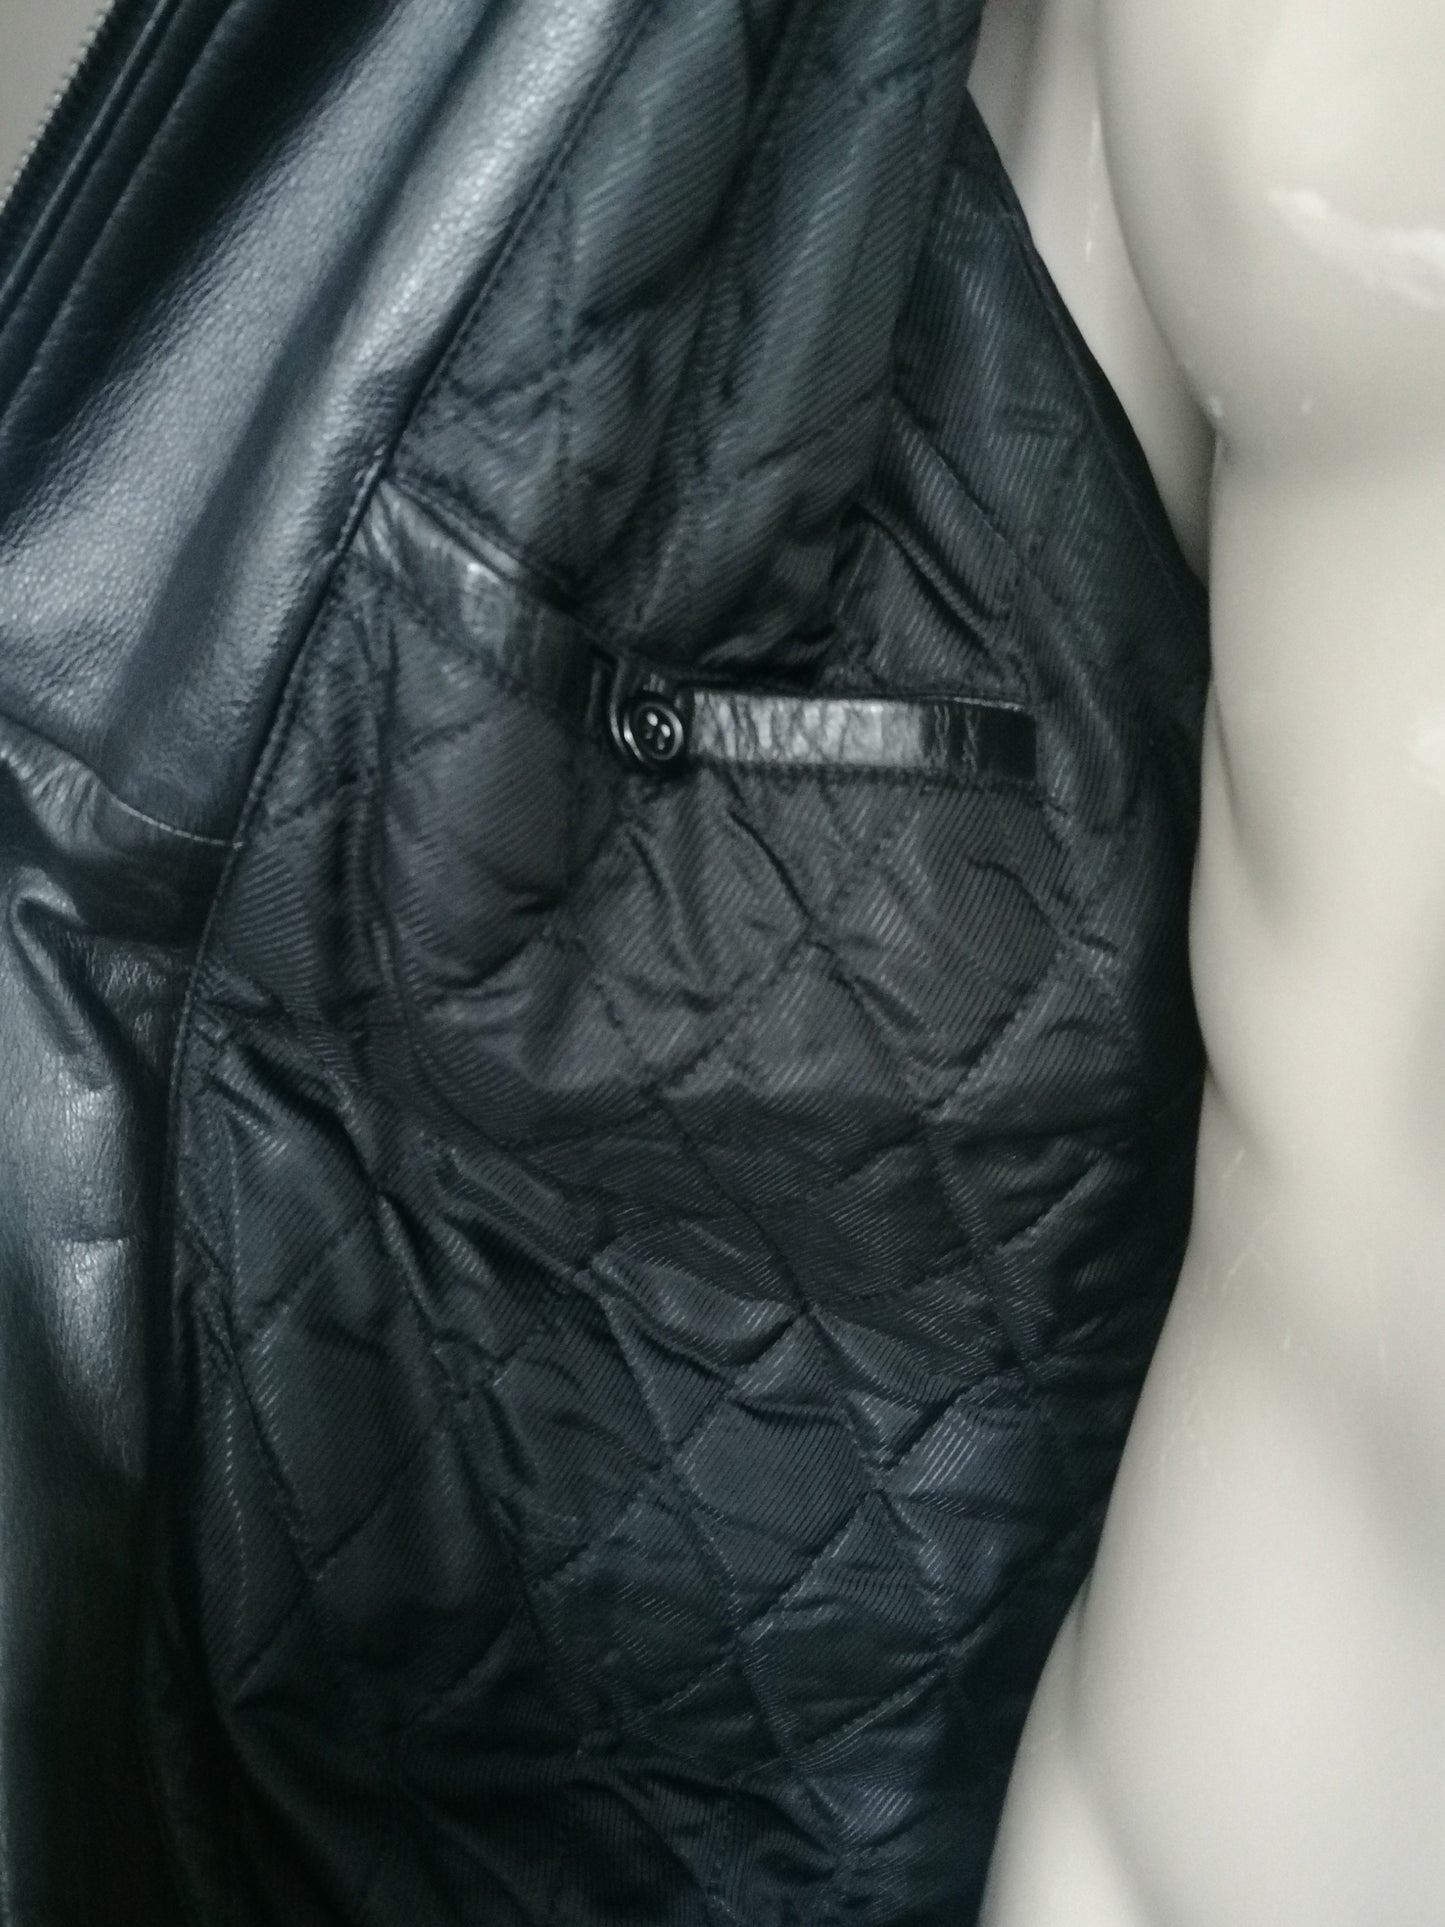 Chaqueta de cuero vintage. Forrado con doble cierre y bolsas. Color negro. Tamaño 56 / xl.